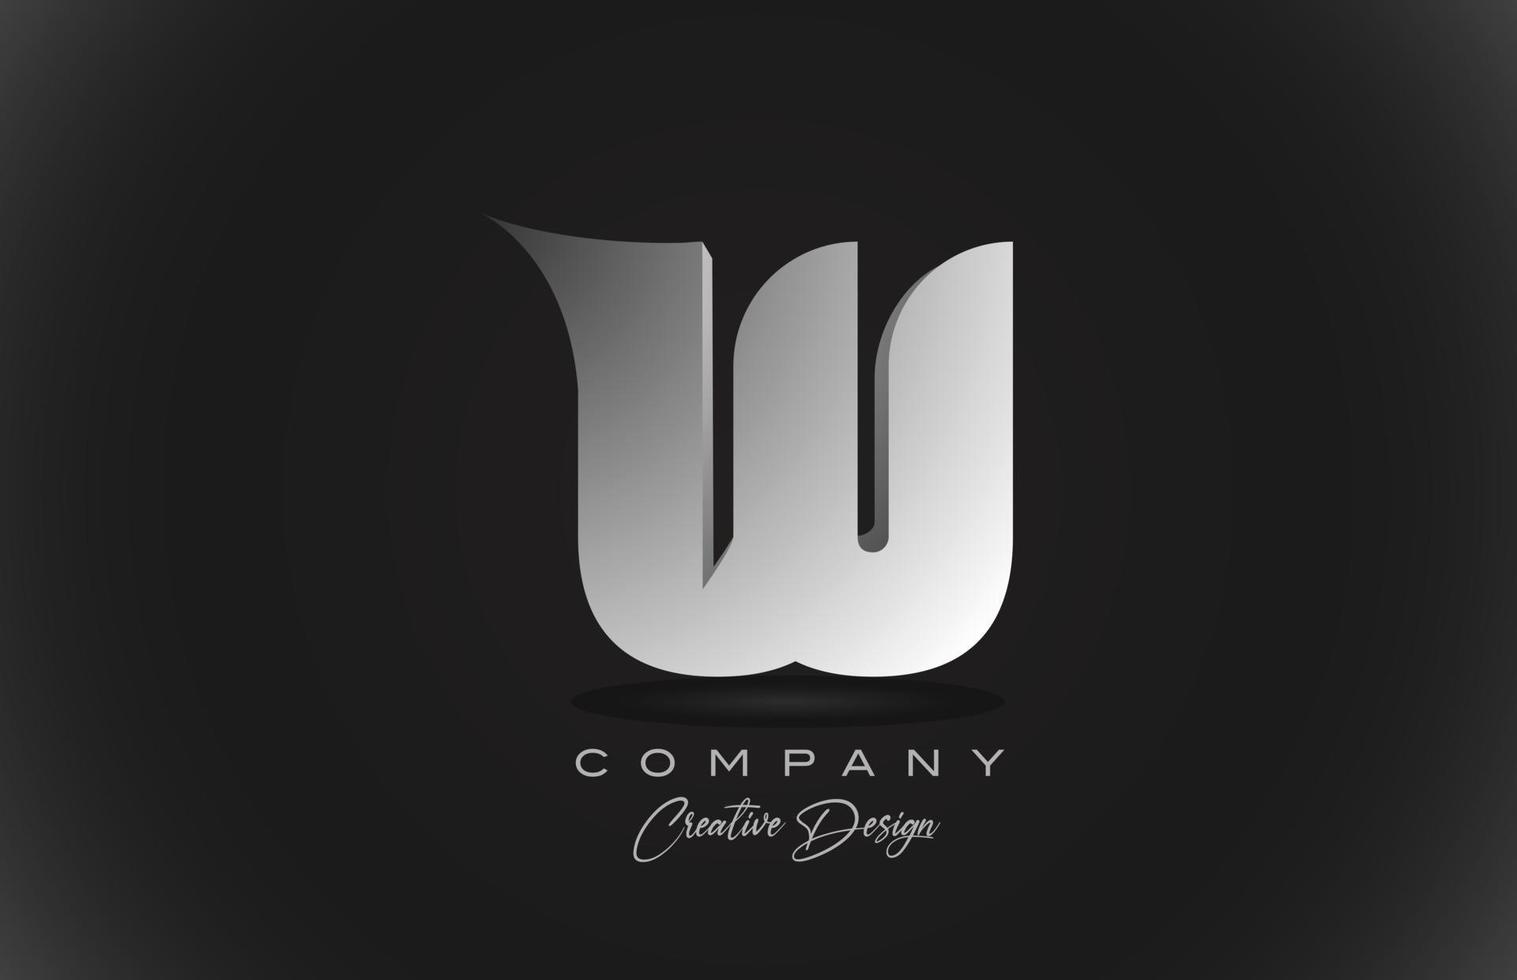 W icono de logotipo de letra del alfabeto degradado blanco con fondo negro. diseño creativo para empresas y corporaciones vector